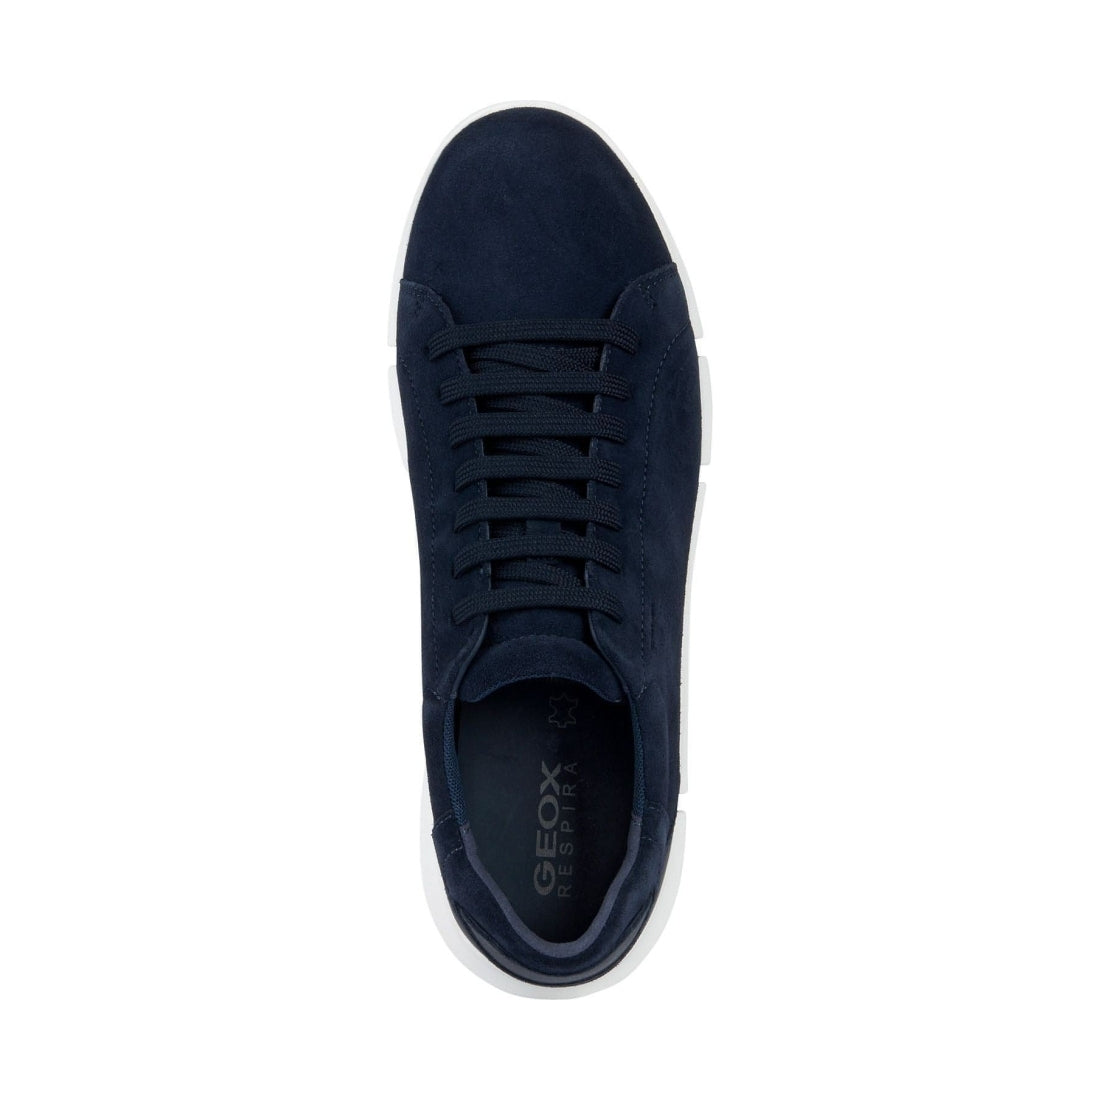 Geox mens navy adacter sport shoes | Vilbury London